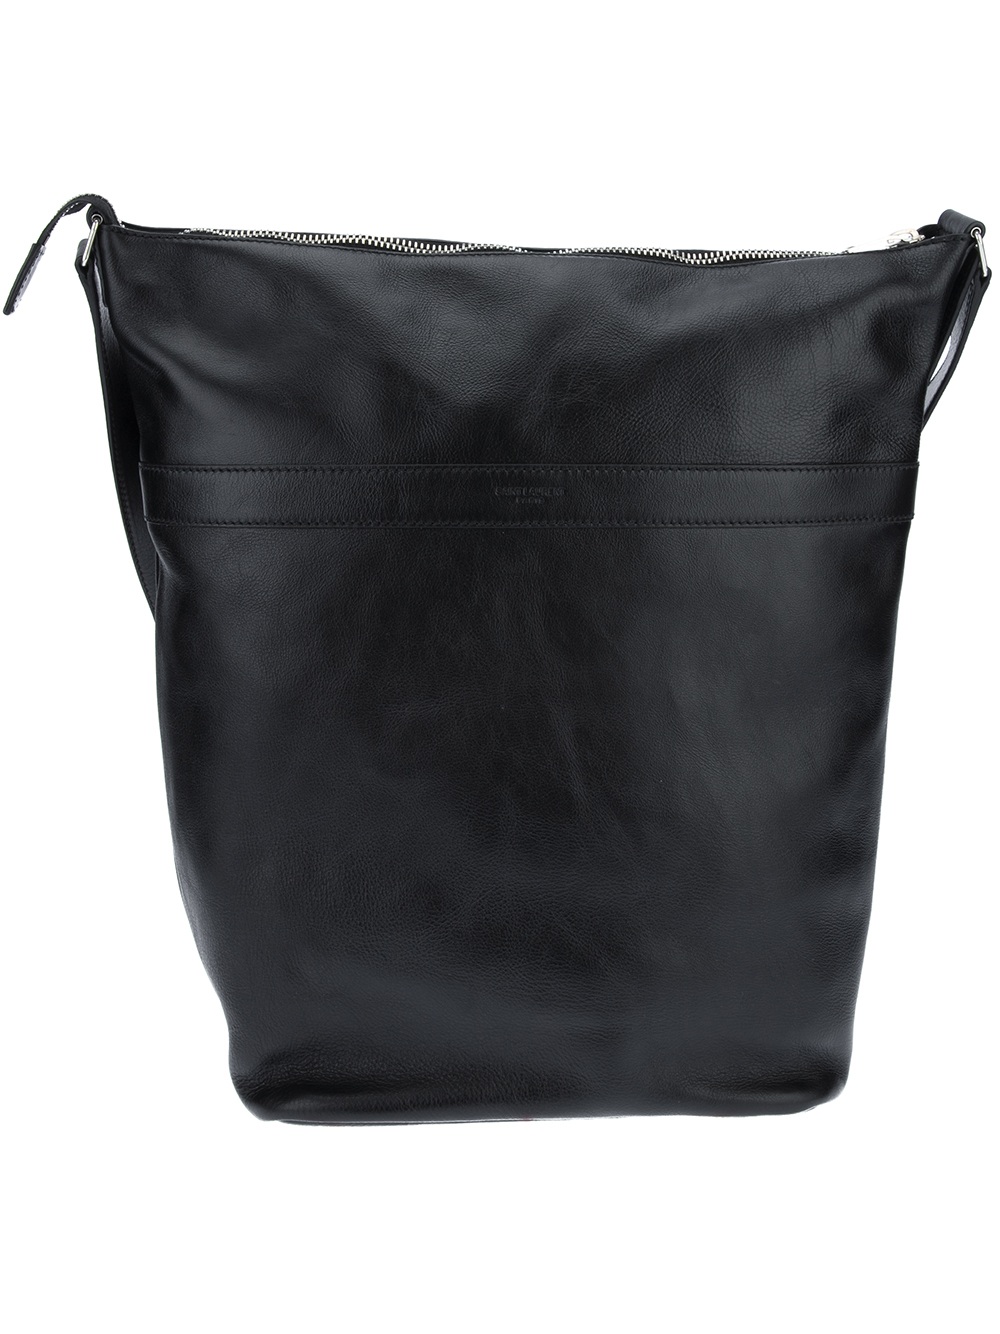 Saint Laurent Crossbody Bag in Black for Men - Lyst